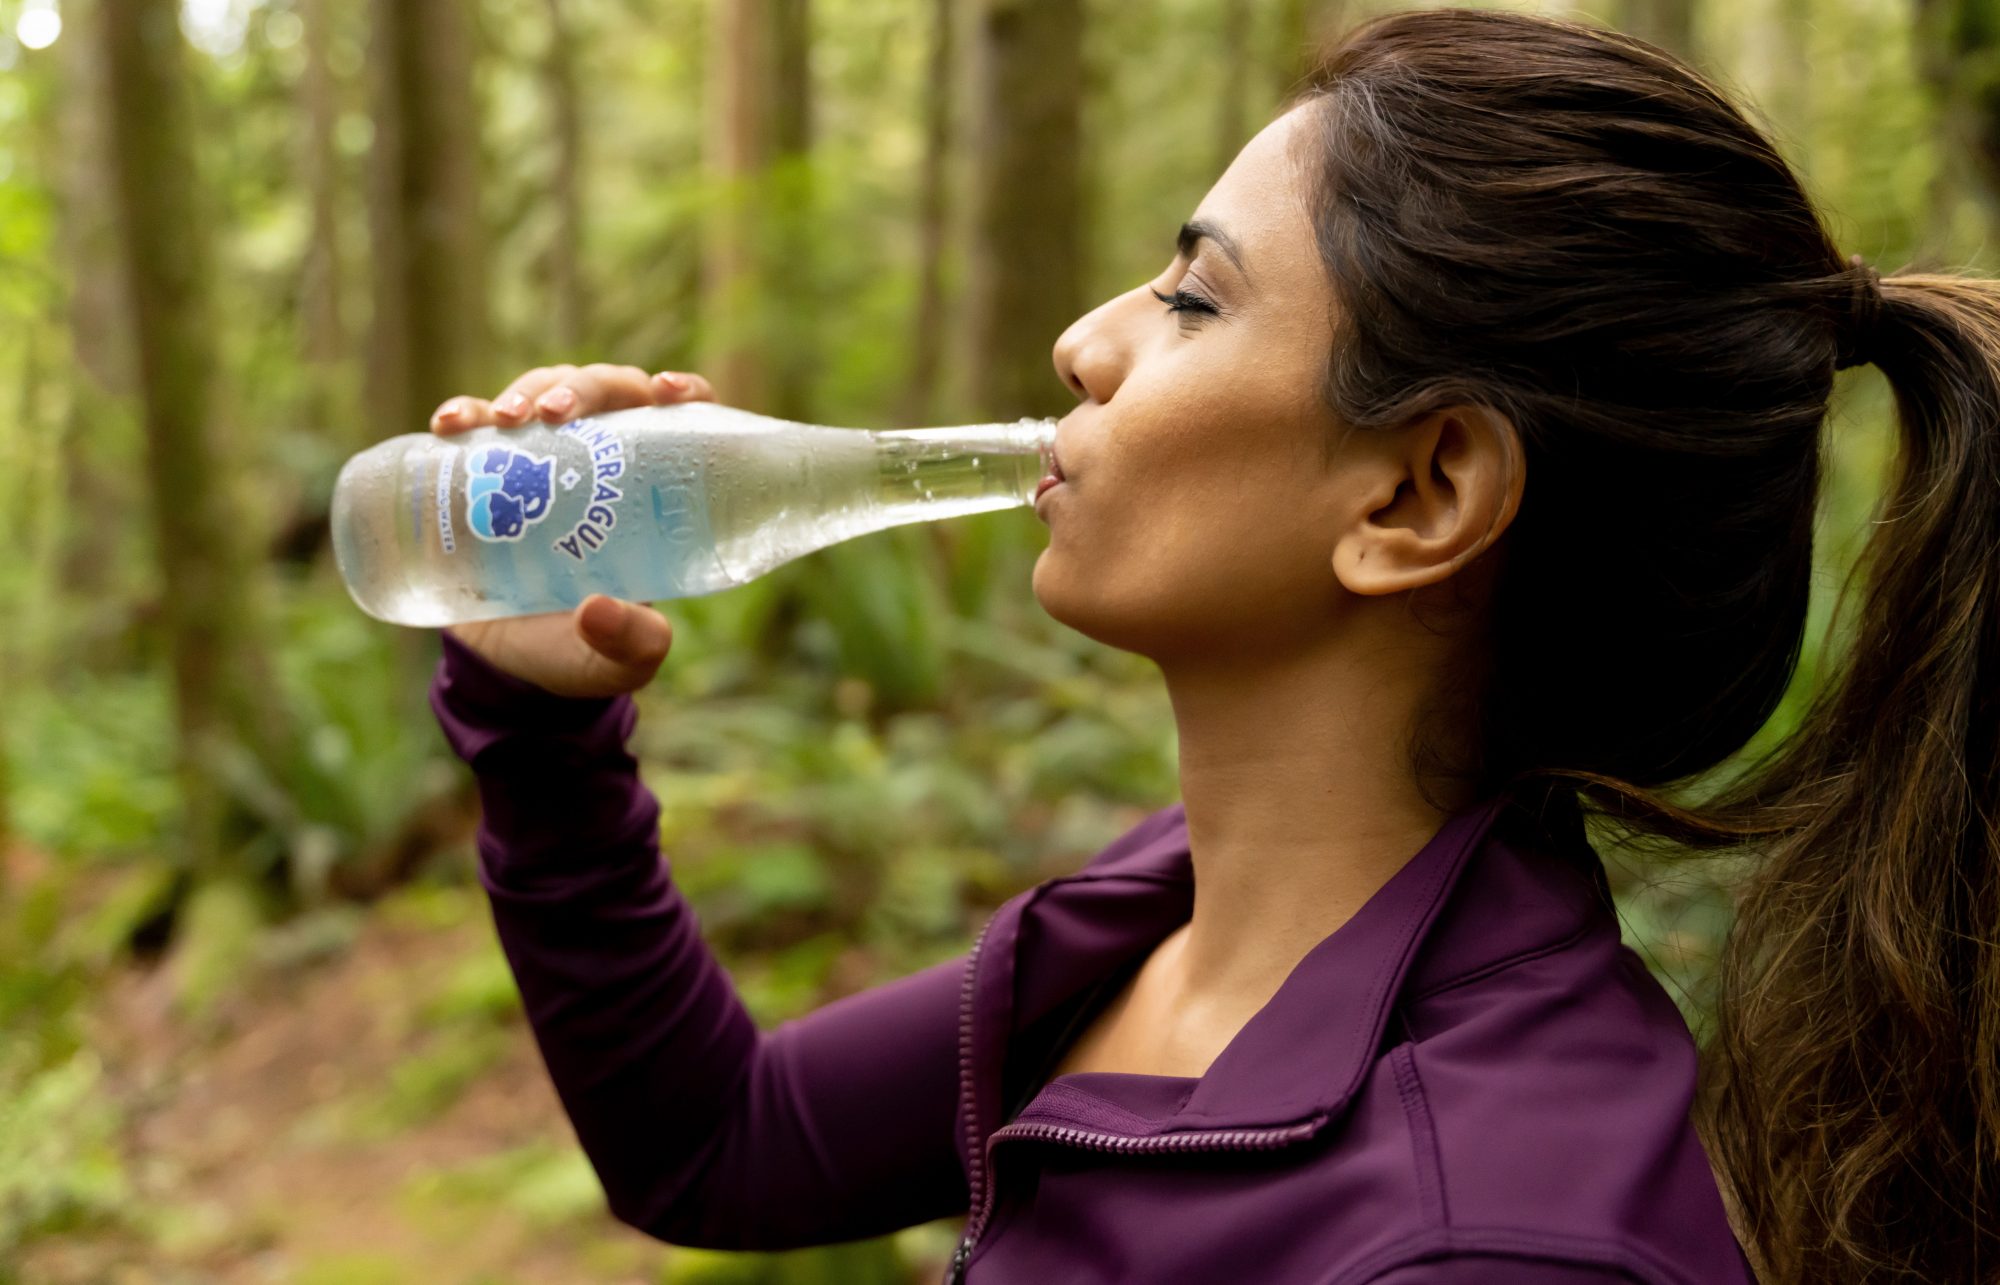 Πόσο νερό χρειάζεται να πίνεις αν αθλείσαι; Σίγουρα περισσότερο απ’ όσο χρειάζεσαι αν δεν αθλείσαι. Καιρός να μάθεις όμως γιατί το κεφάλαιο ενυδάτωση είναι τόσο σημαντικό για τα άτομα που αθλούνται.